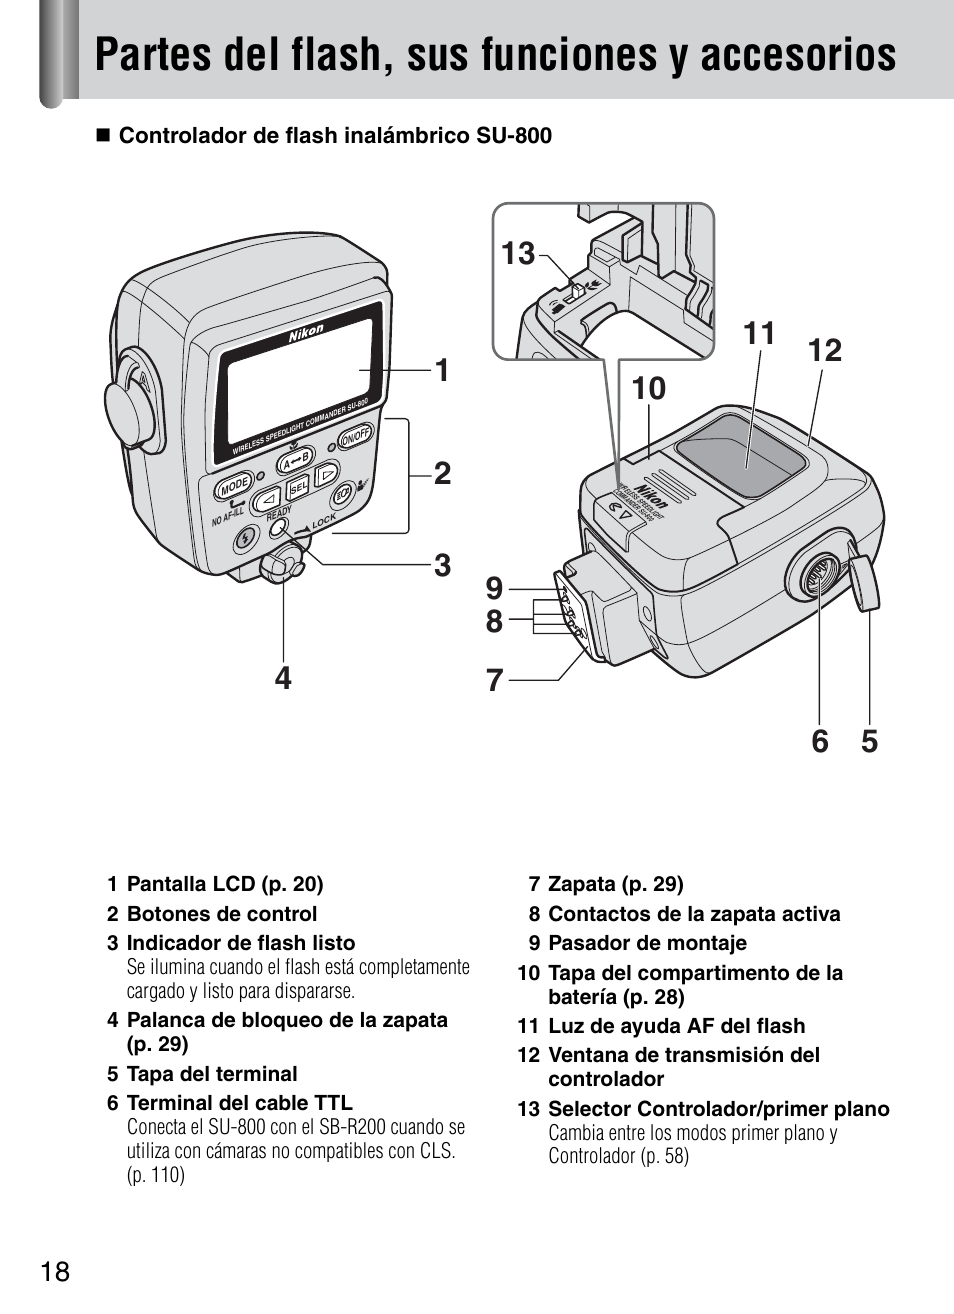 Partes del flash, sus funciones y accesorios | Nikon HO98751 Manual del usuario | Página 20 / 136